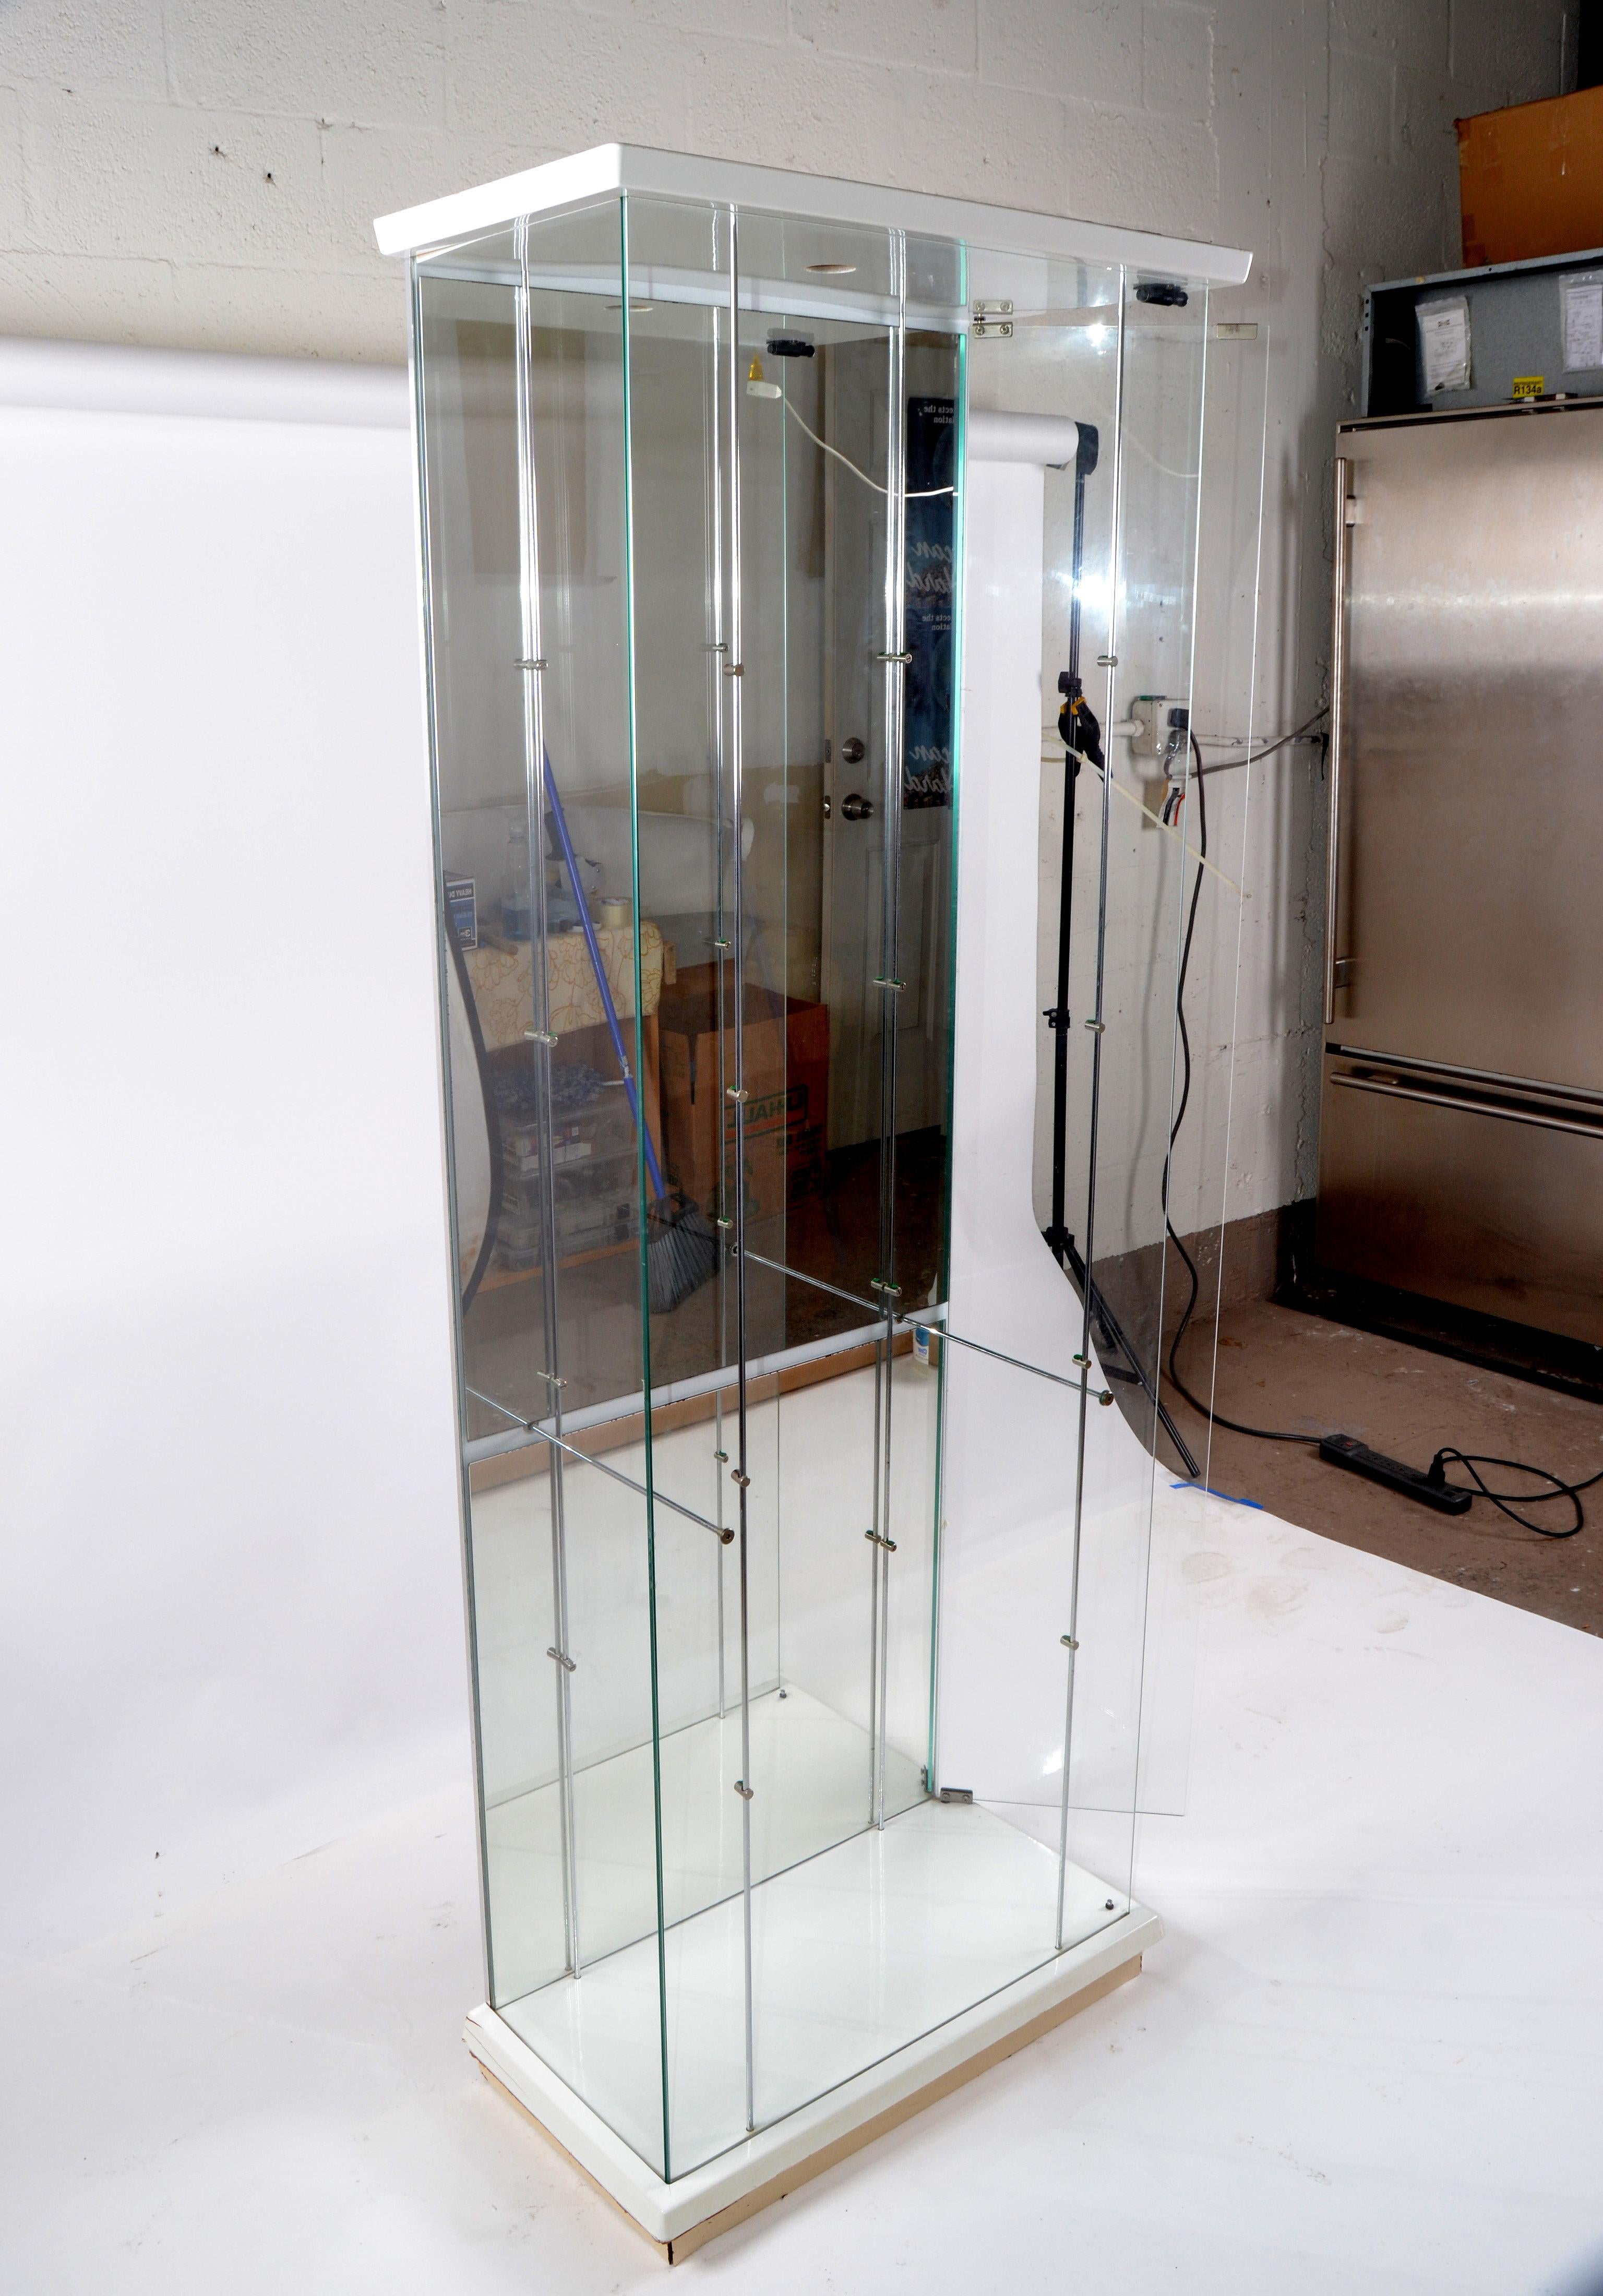 Six pieds de haut et quatre niveaux d'étagères en verre Vitrine moderne du milieu du siècle fabriquée en Italie.
Base en bois et haute colonne de verre et de chrome pour la présentation ou le rangement.
La porte se trouve sur le côté et fonctionne